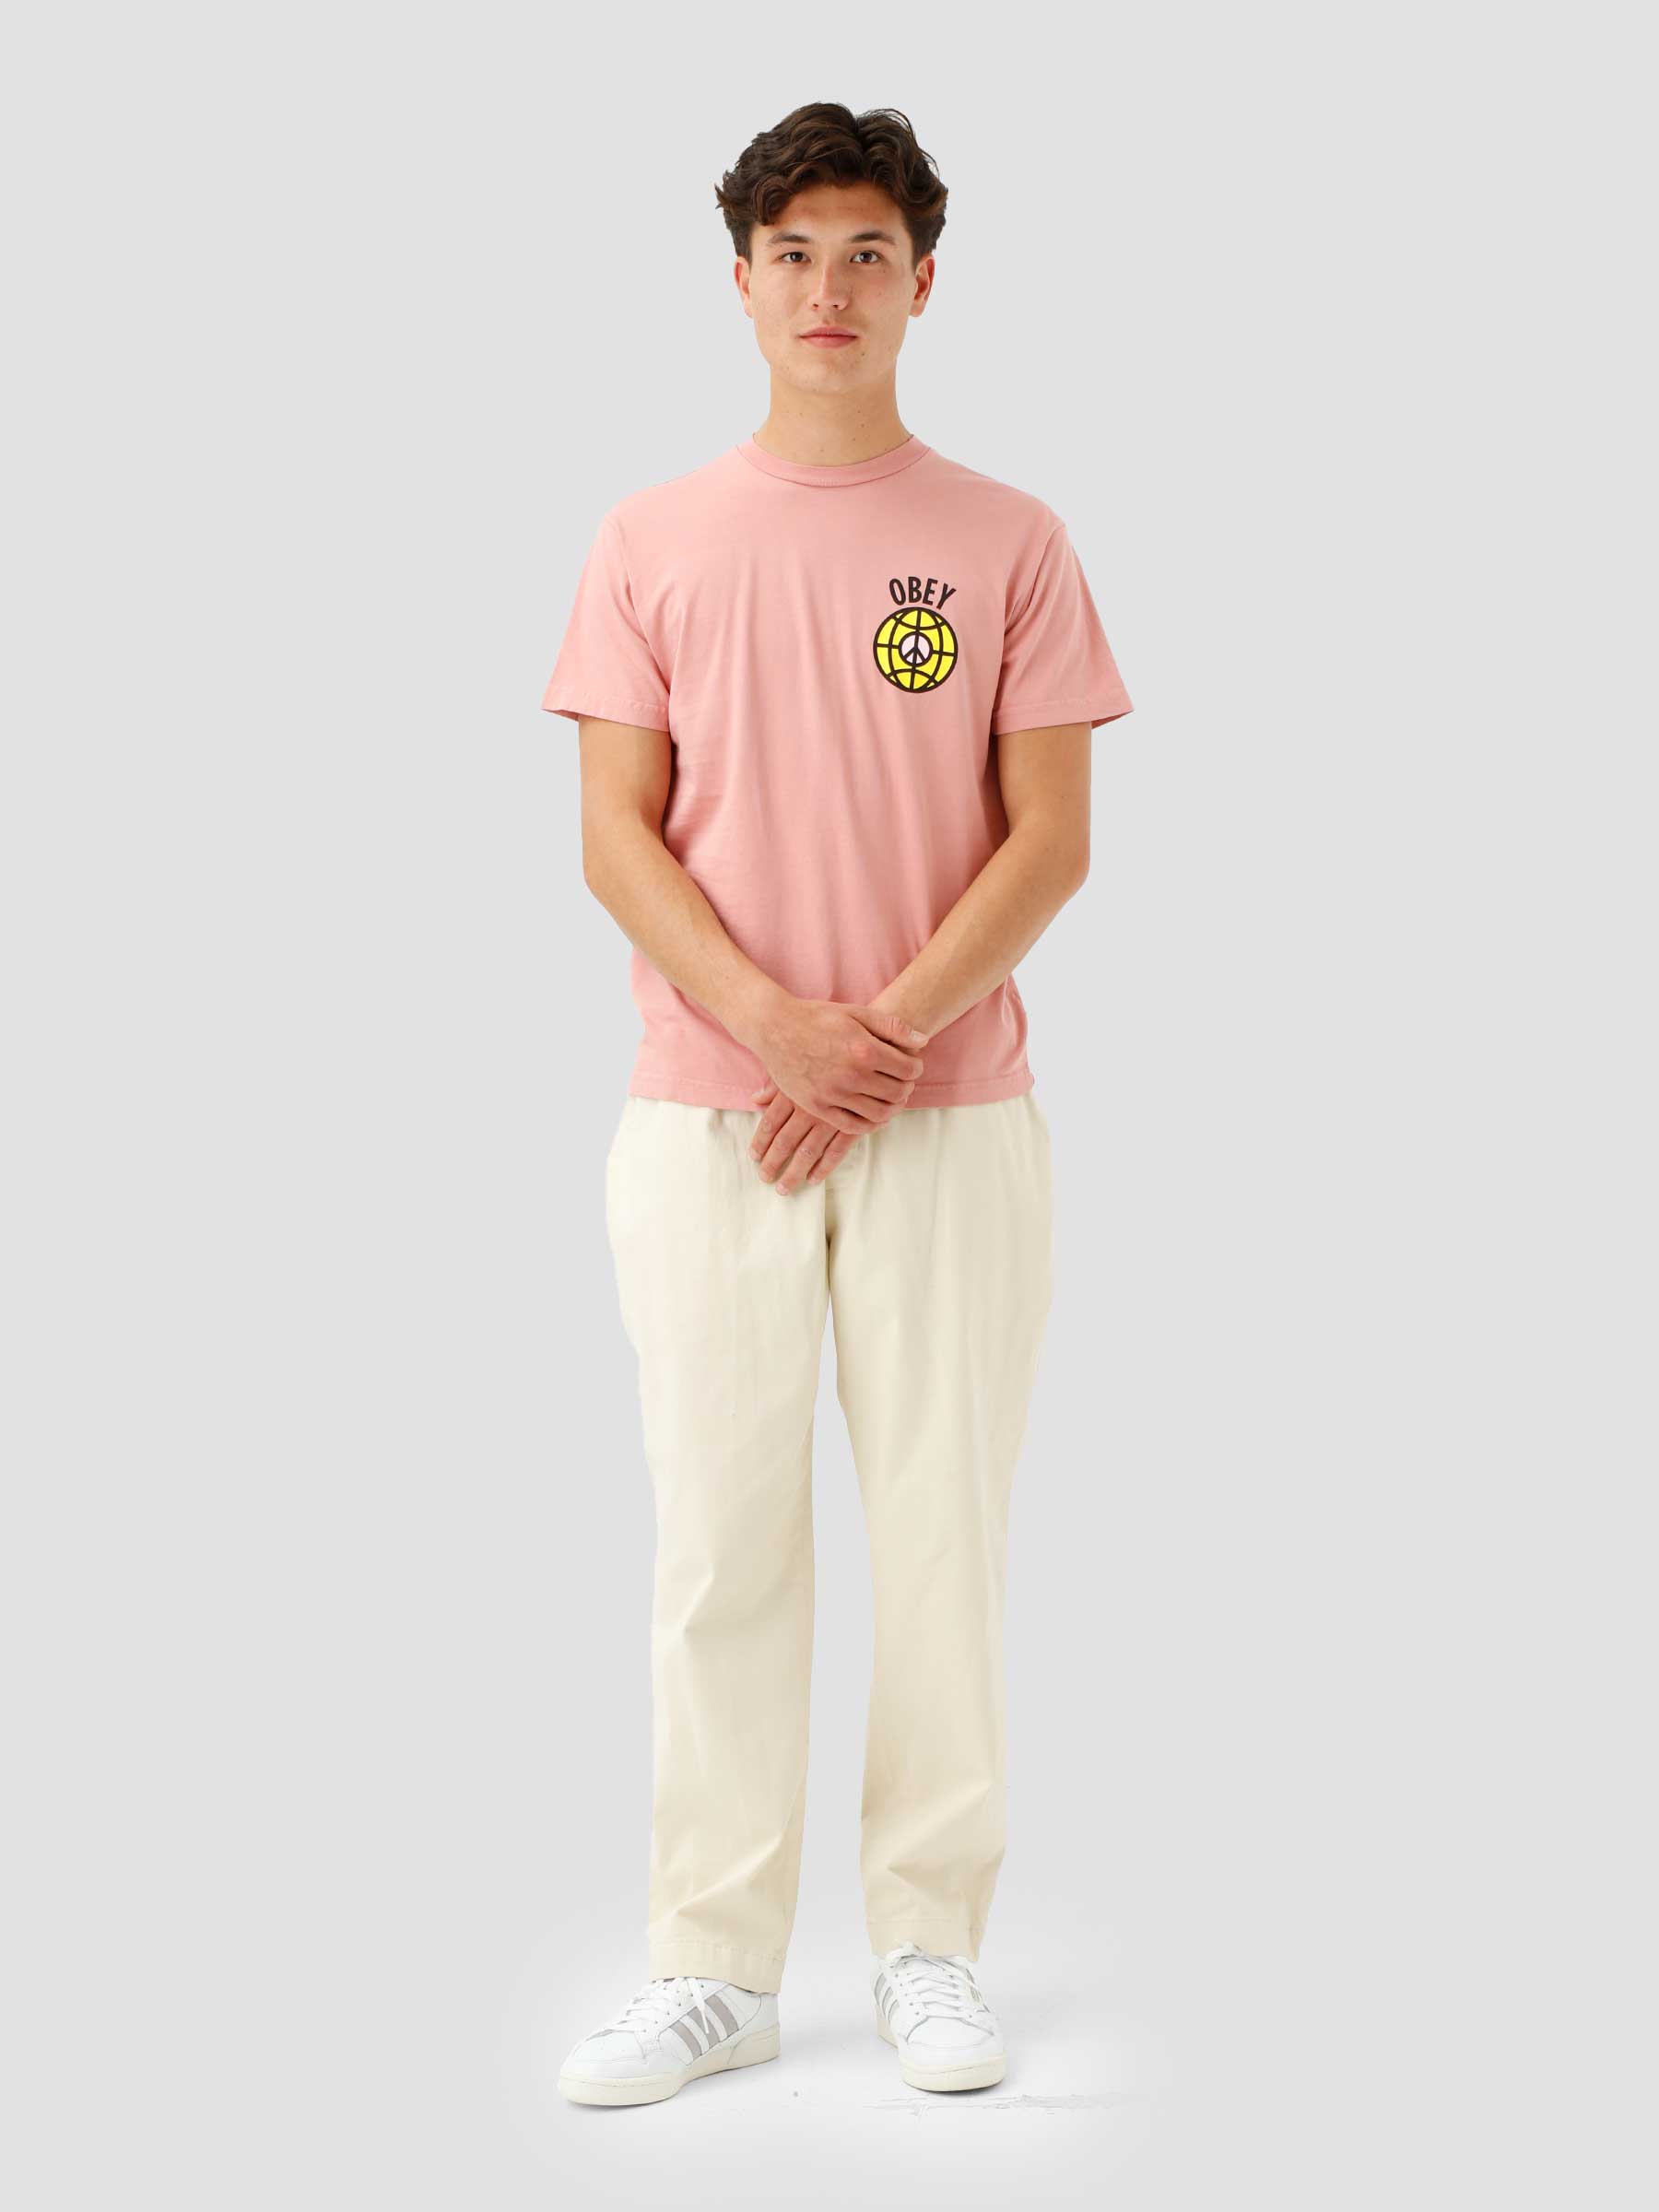 Empower All Women T-shirt Pink Amethyst 163003091